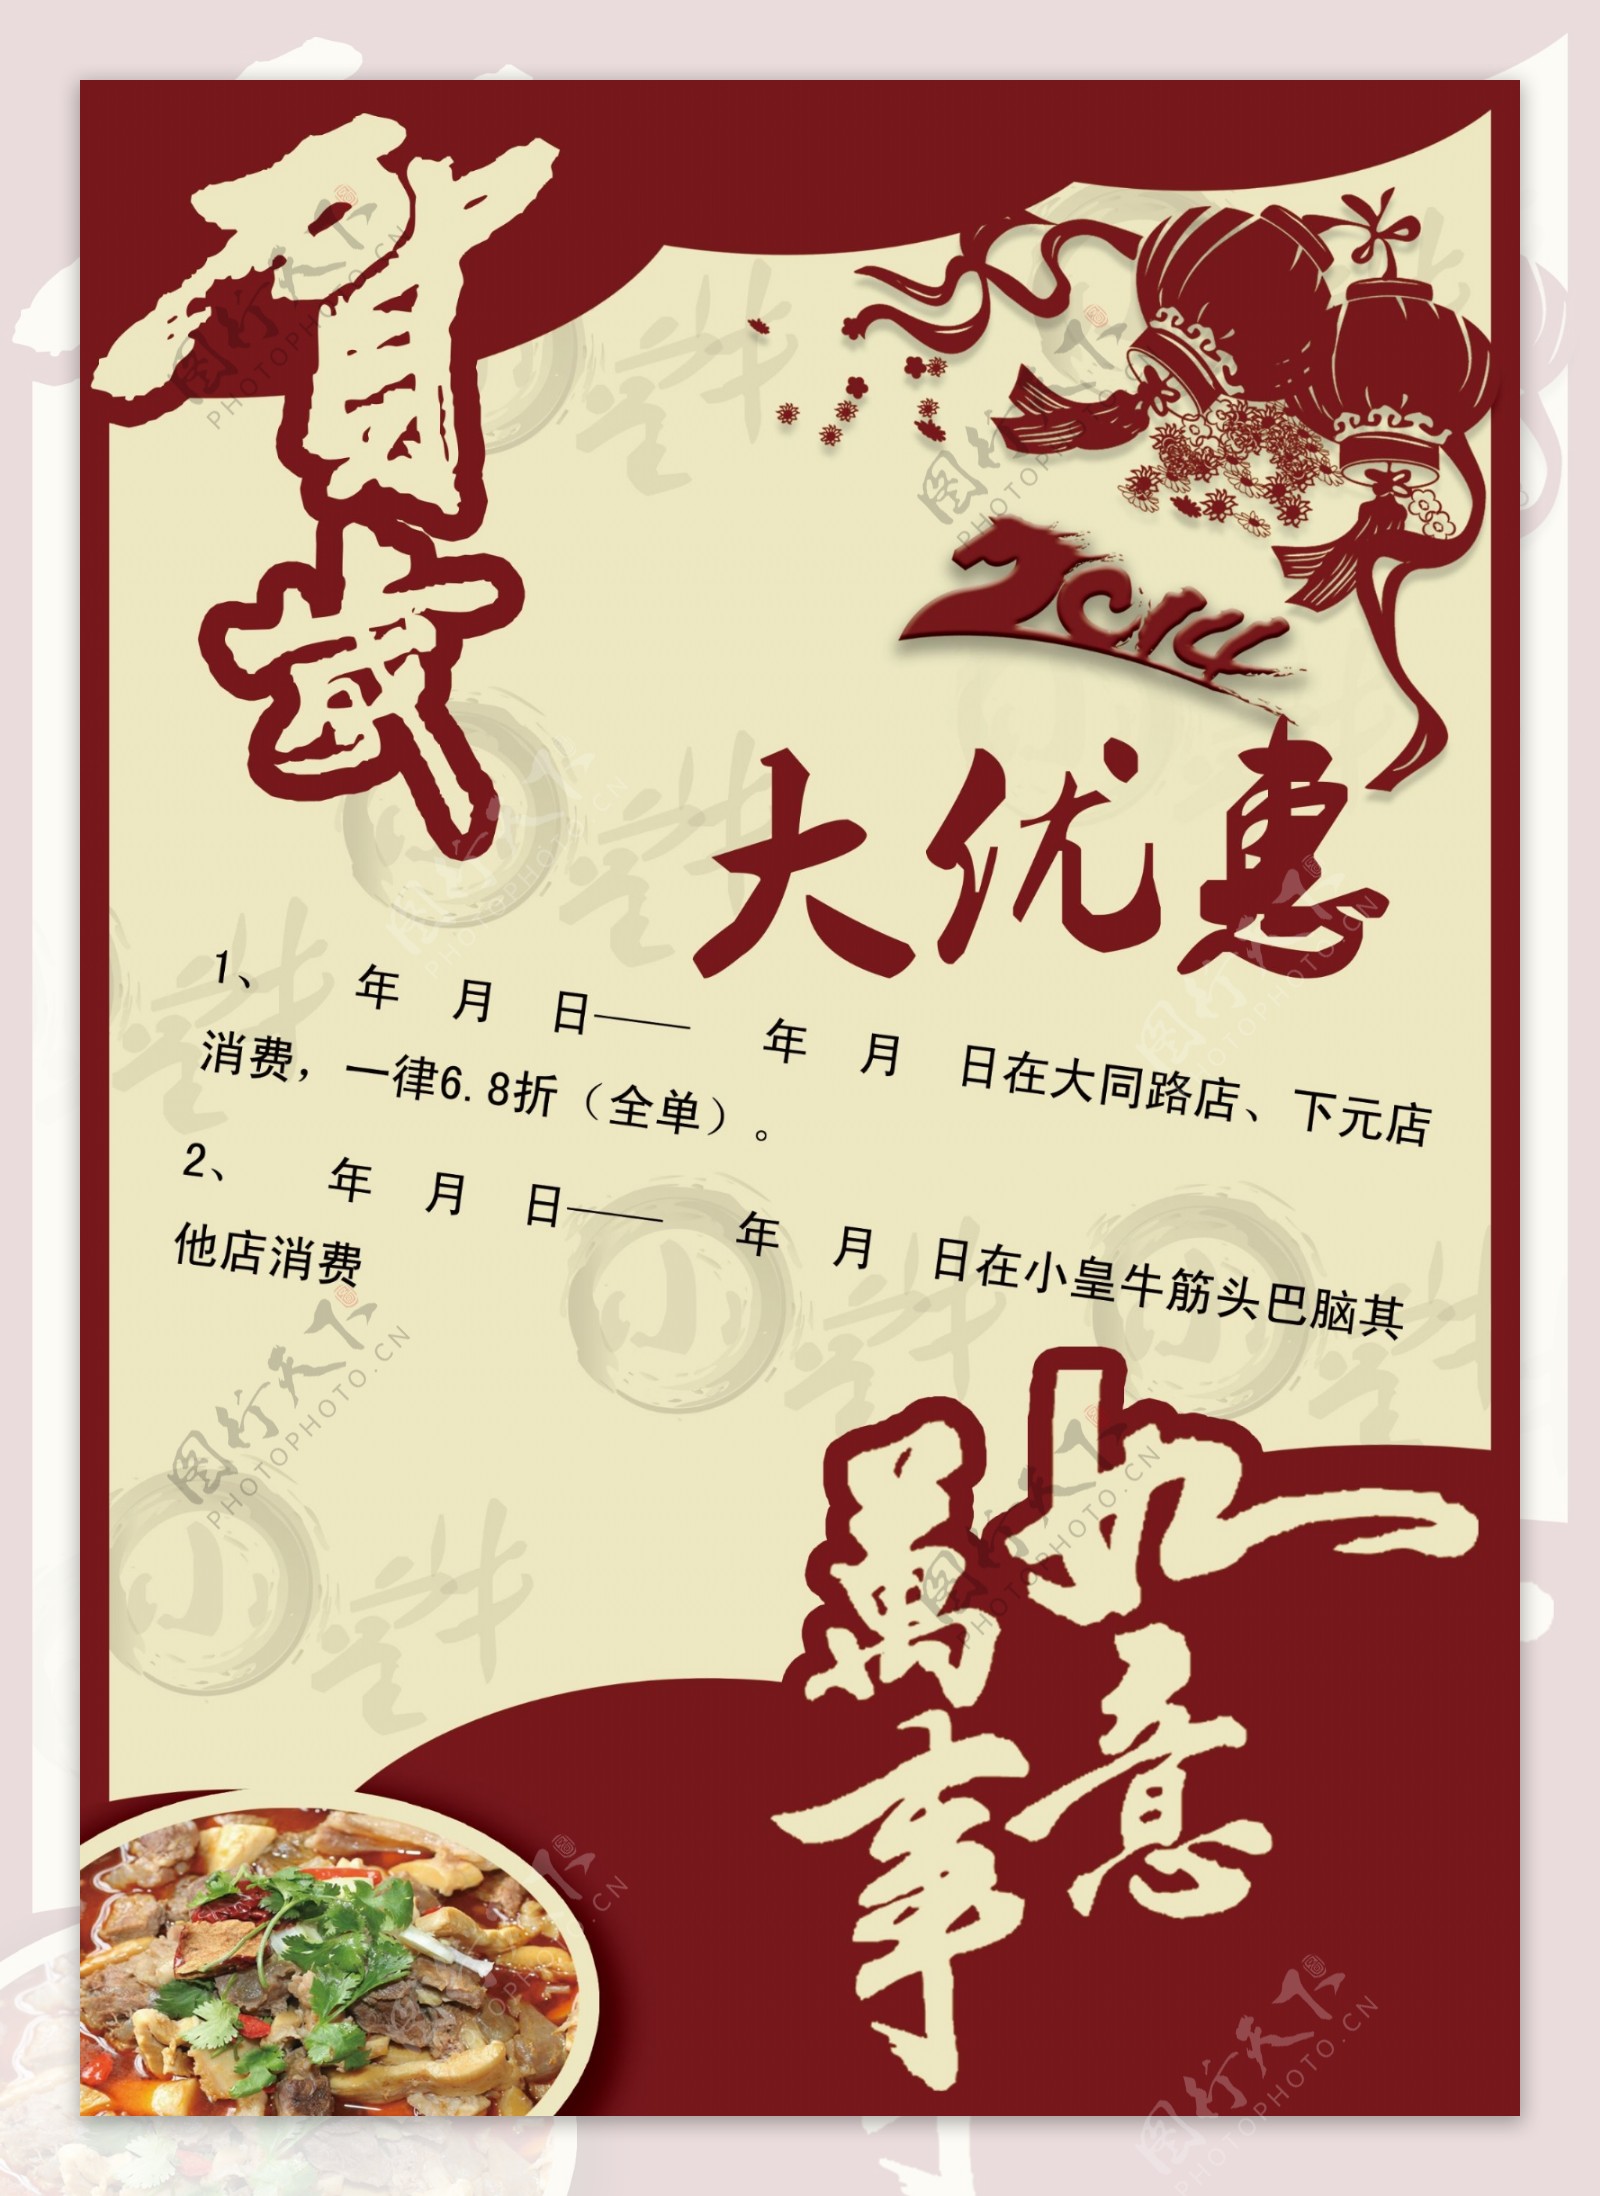 春节火锅宣传单模版图片